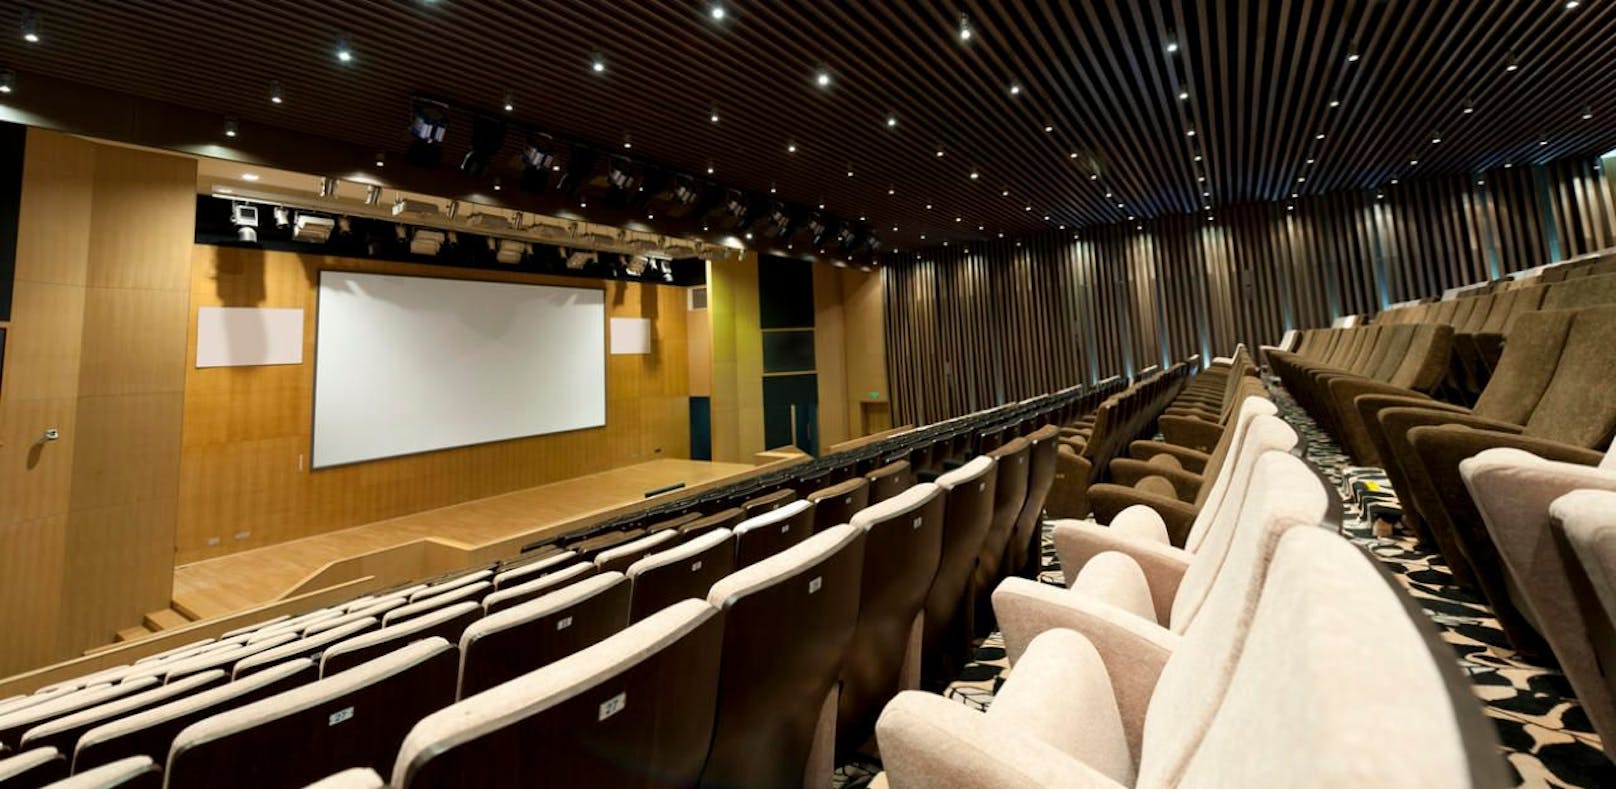 Am 18. April wurde in Saudiarabiens Hauptstadt Riad das erste Kino eröffnet